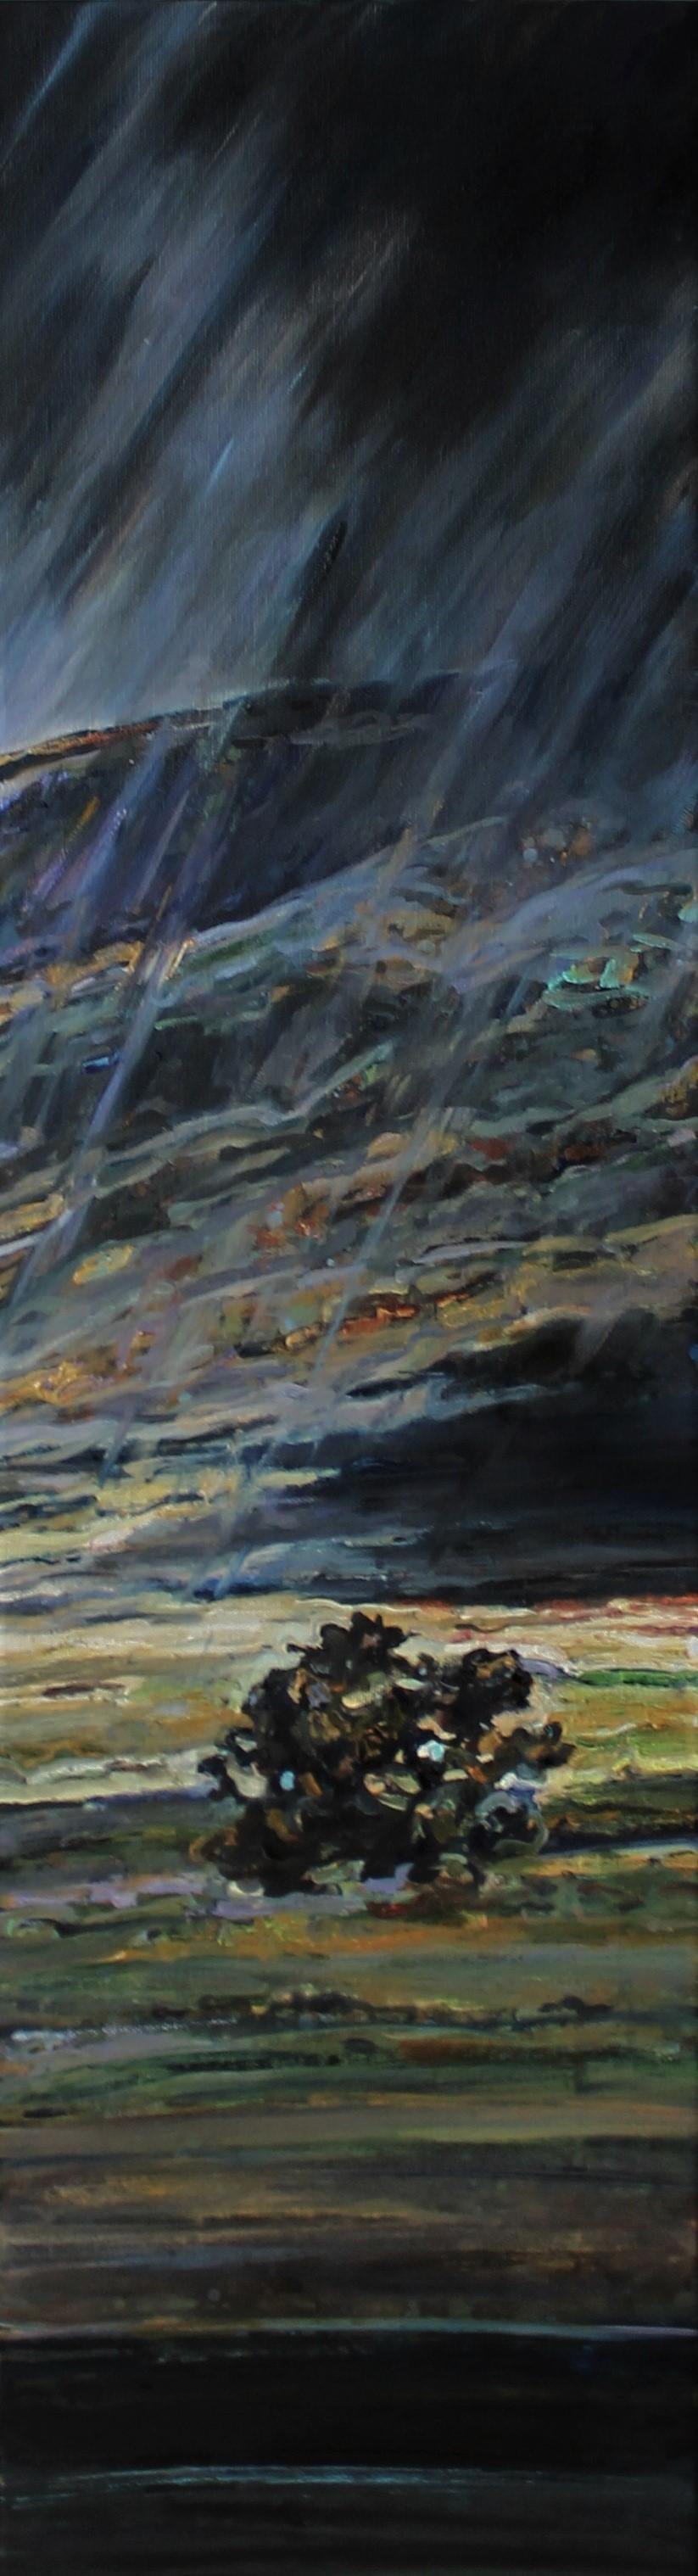 Landscape Painting Elena Georgieva - Peinture à l'huile sur toile Paysage Rain II, vert, bleu, jaune, brun, jaune et violet